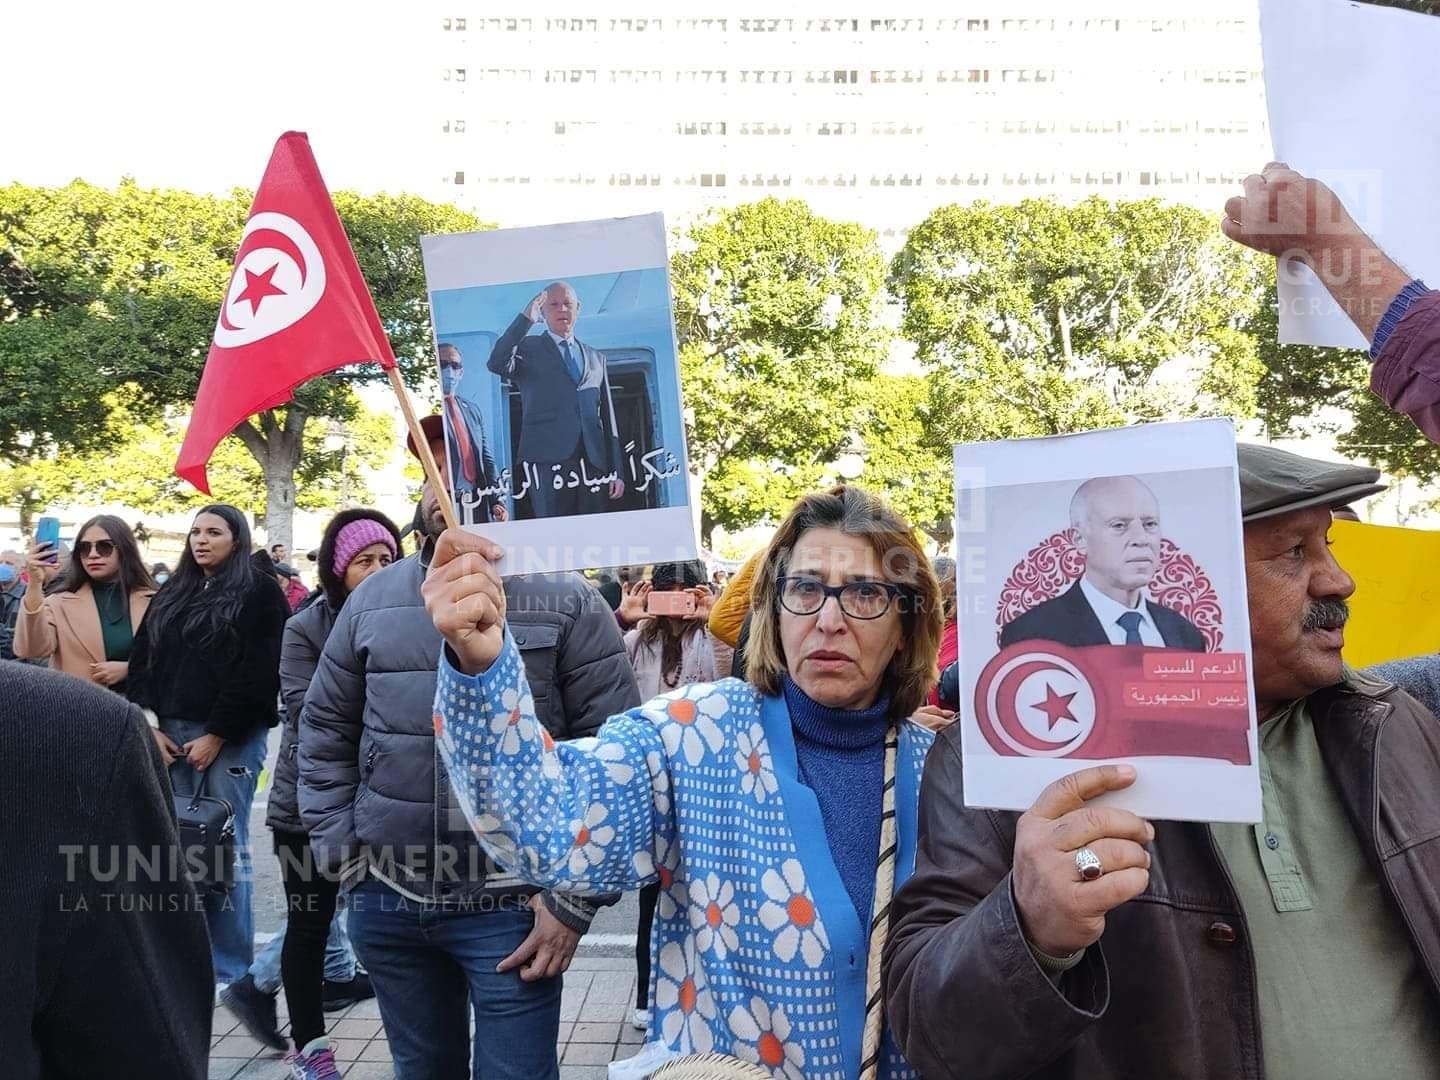 Près de 100 manifestants expriment leur soutien aux décisions de Kais Saied